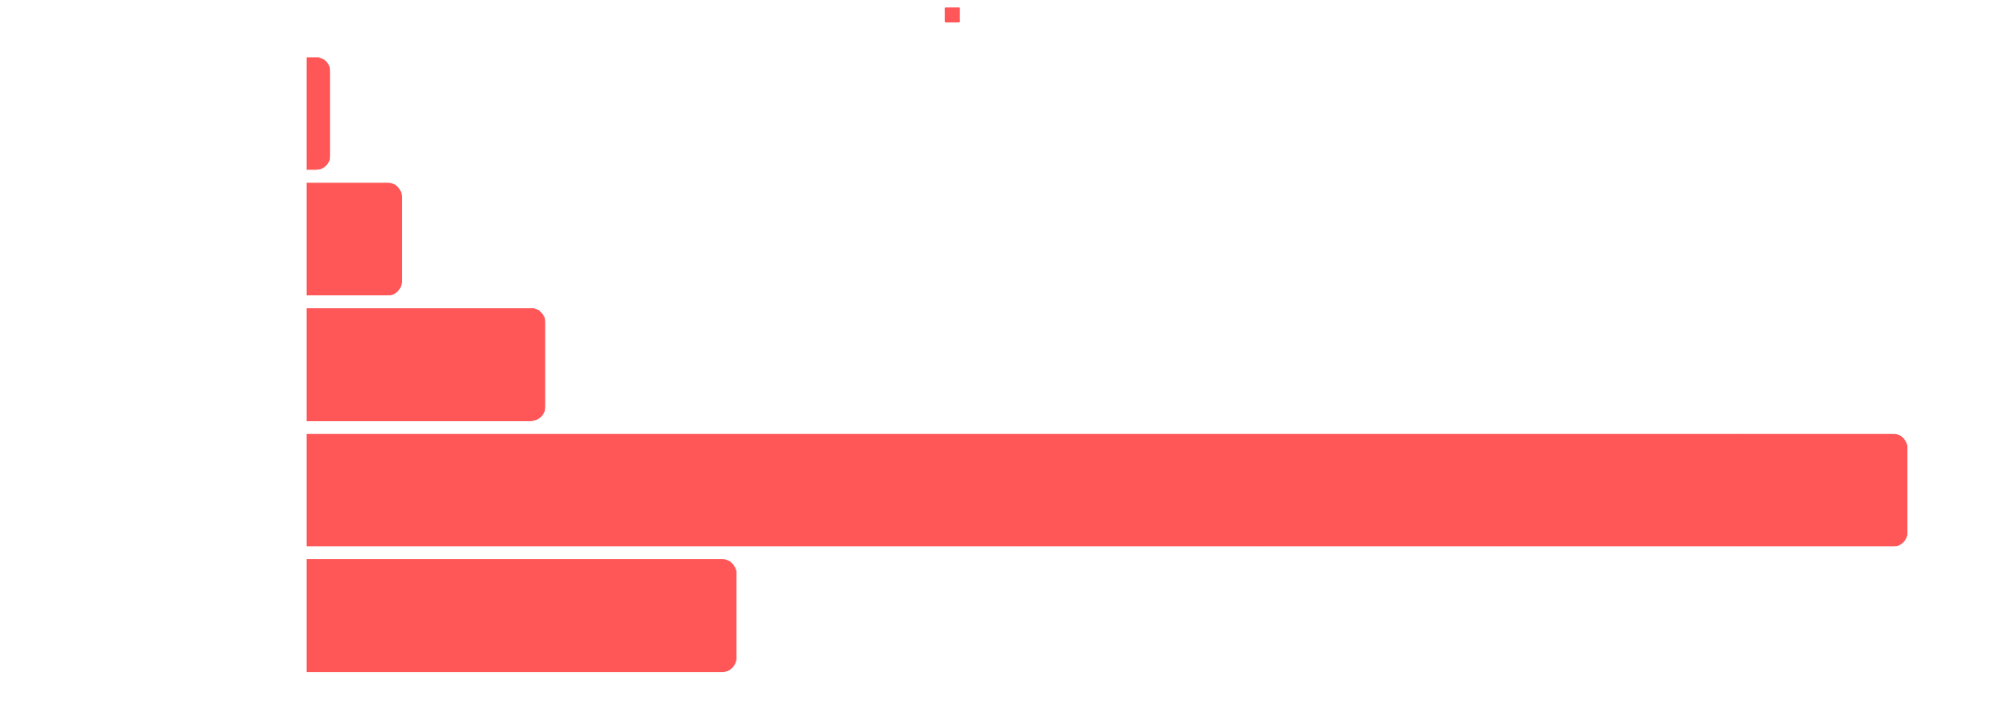 Publishing-Timeline